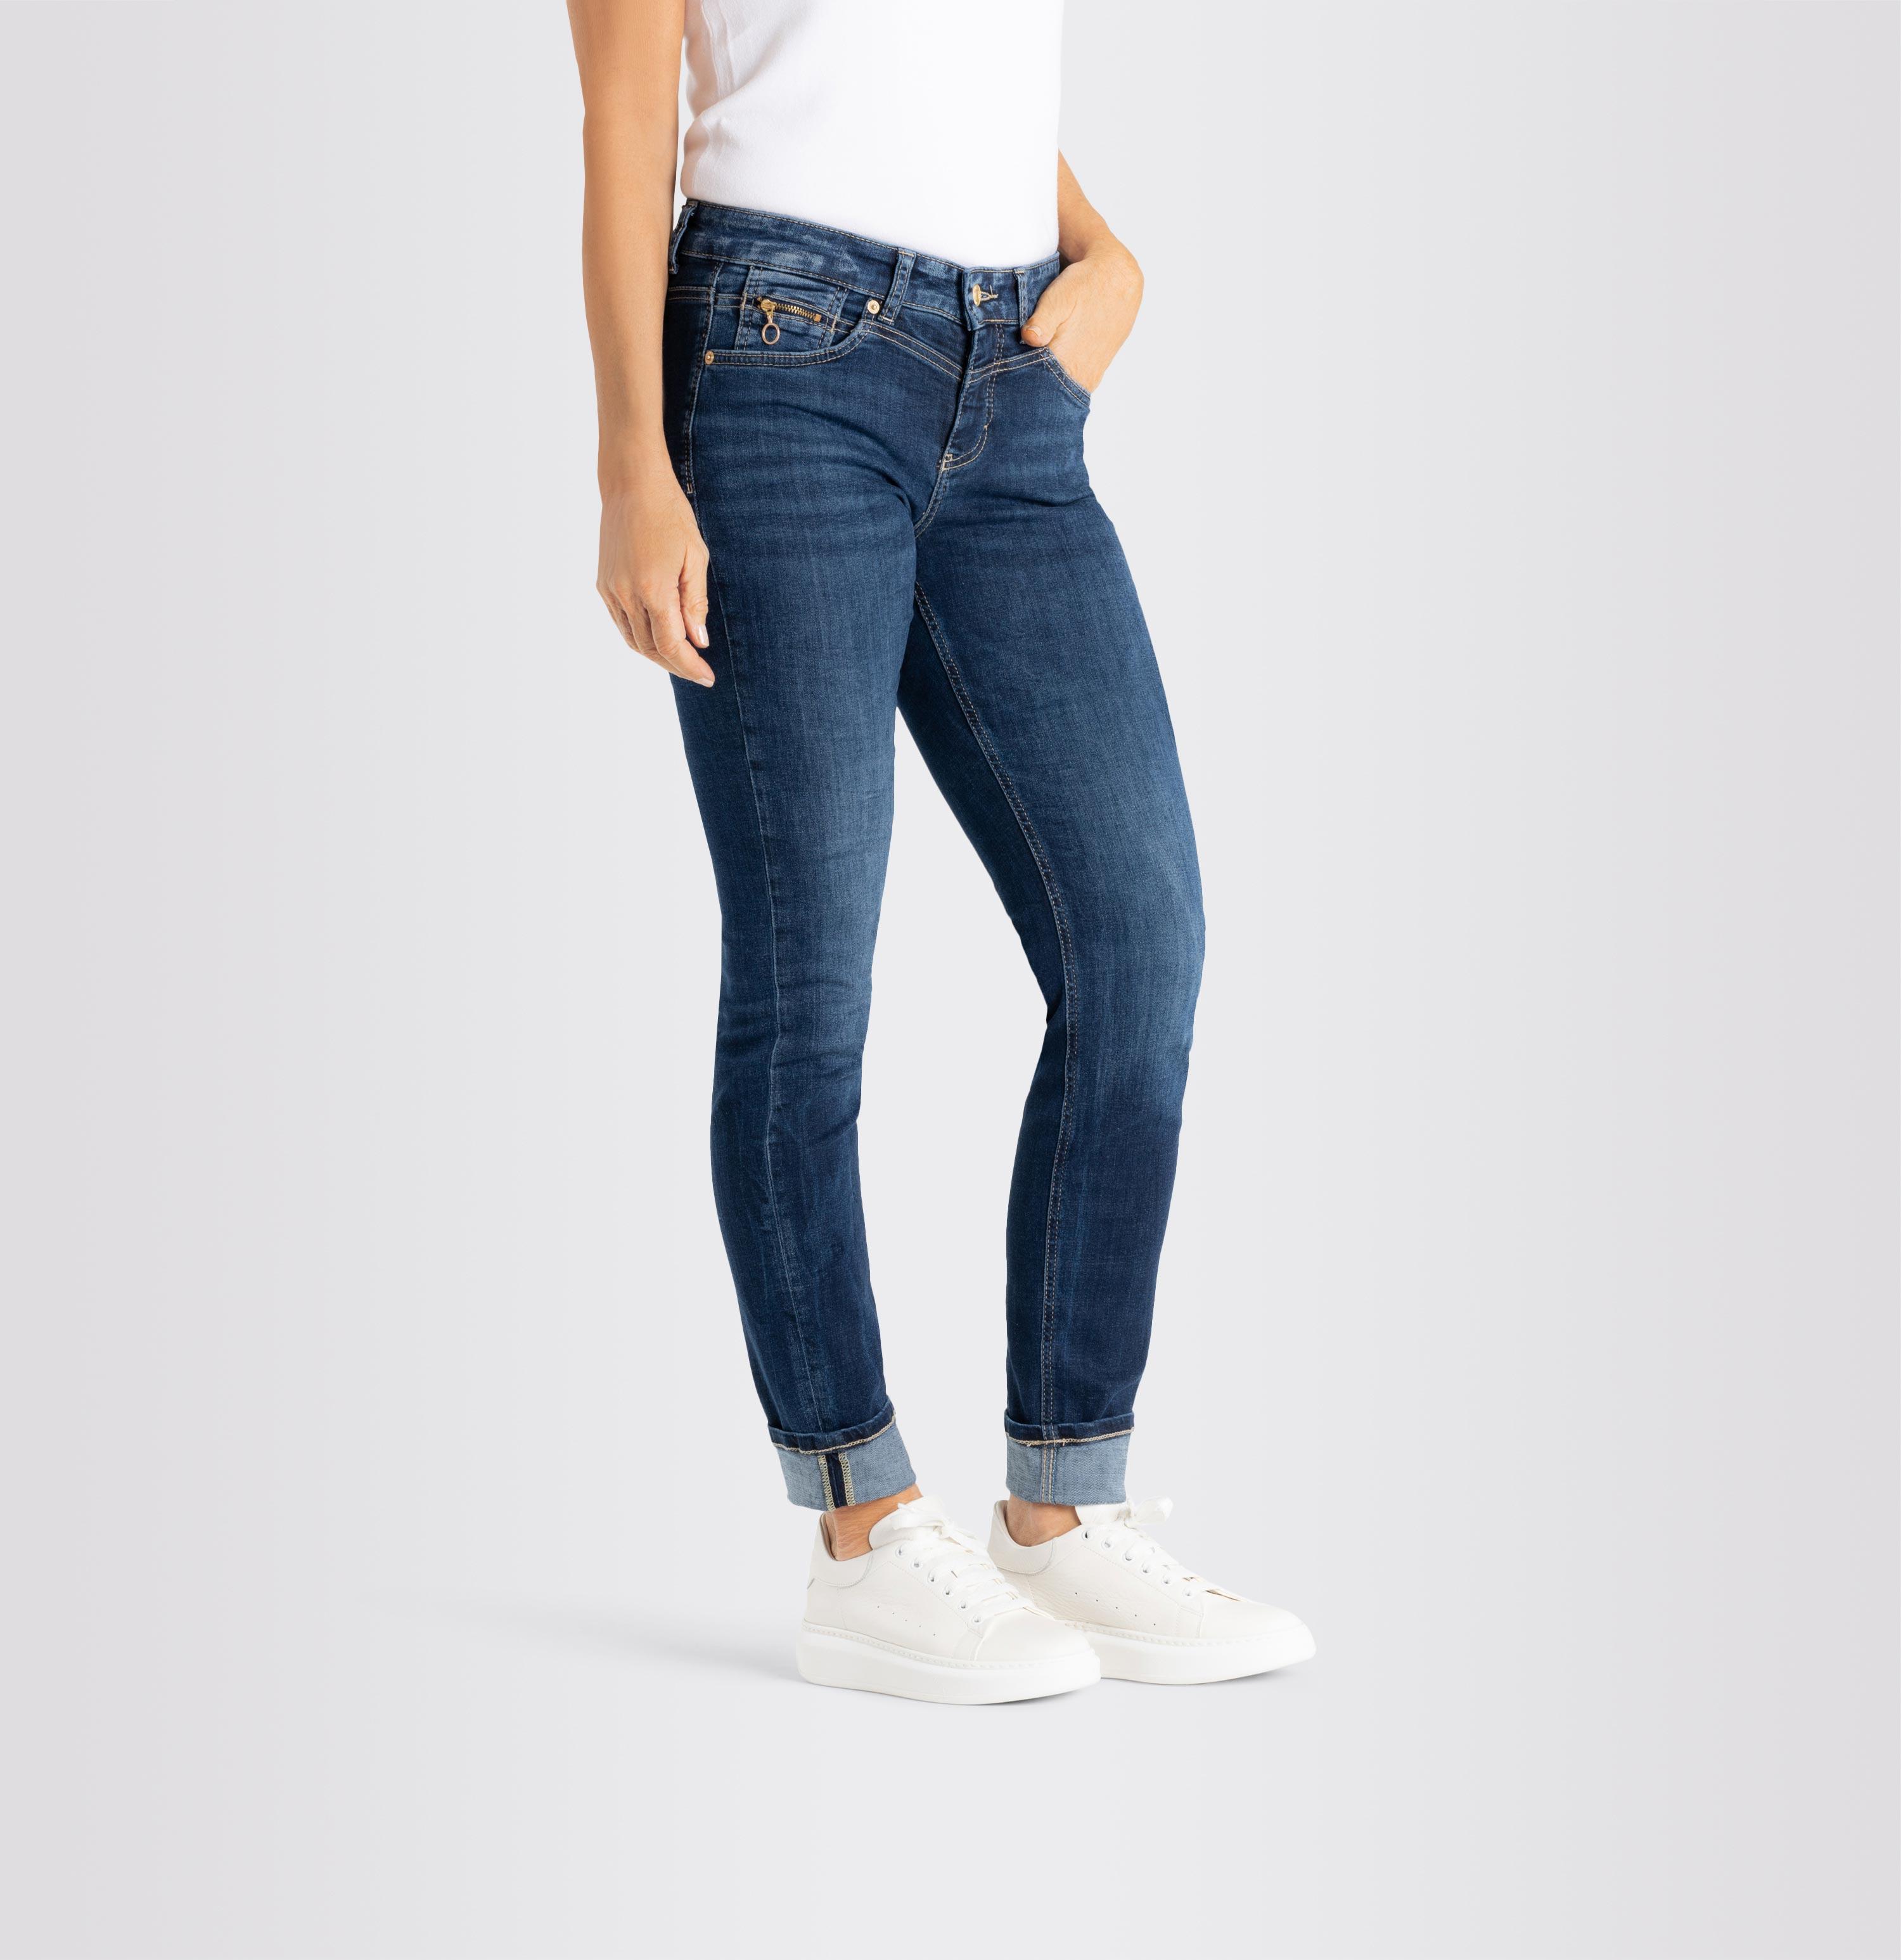 D671 Damenhose, | Rich Light dunkelblau Authentic, MAC Slim, Jeans Shop